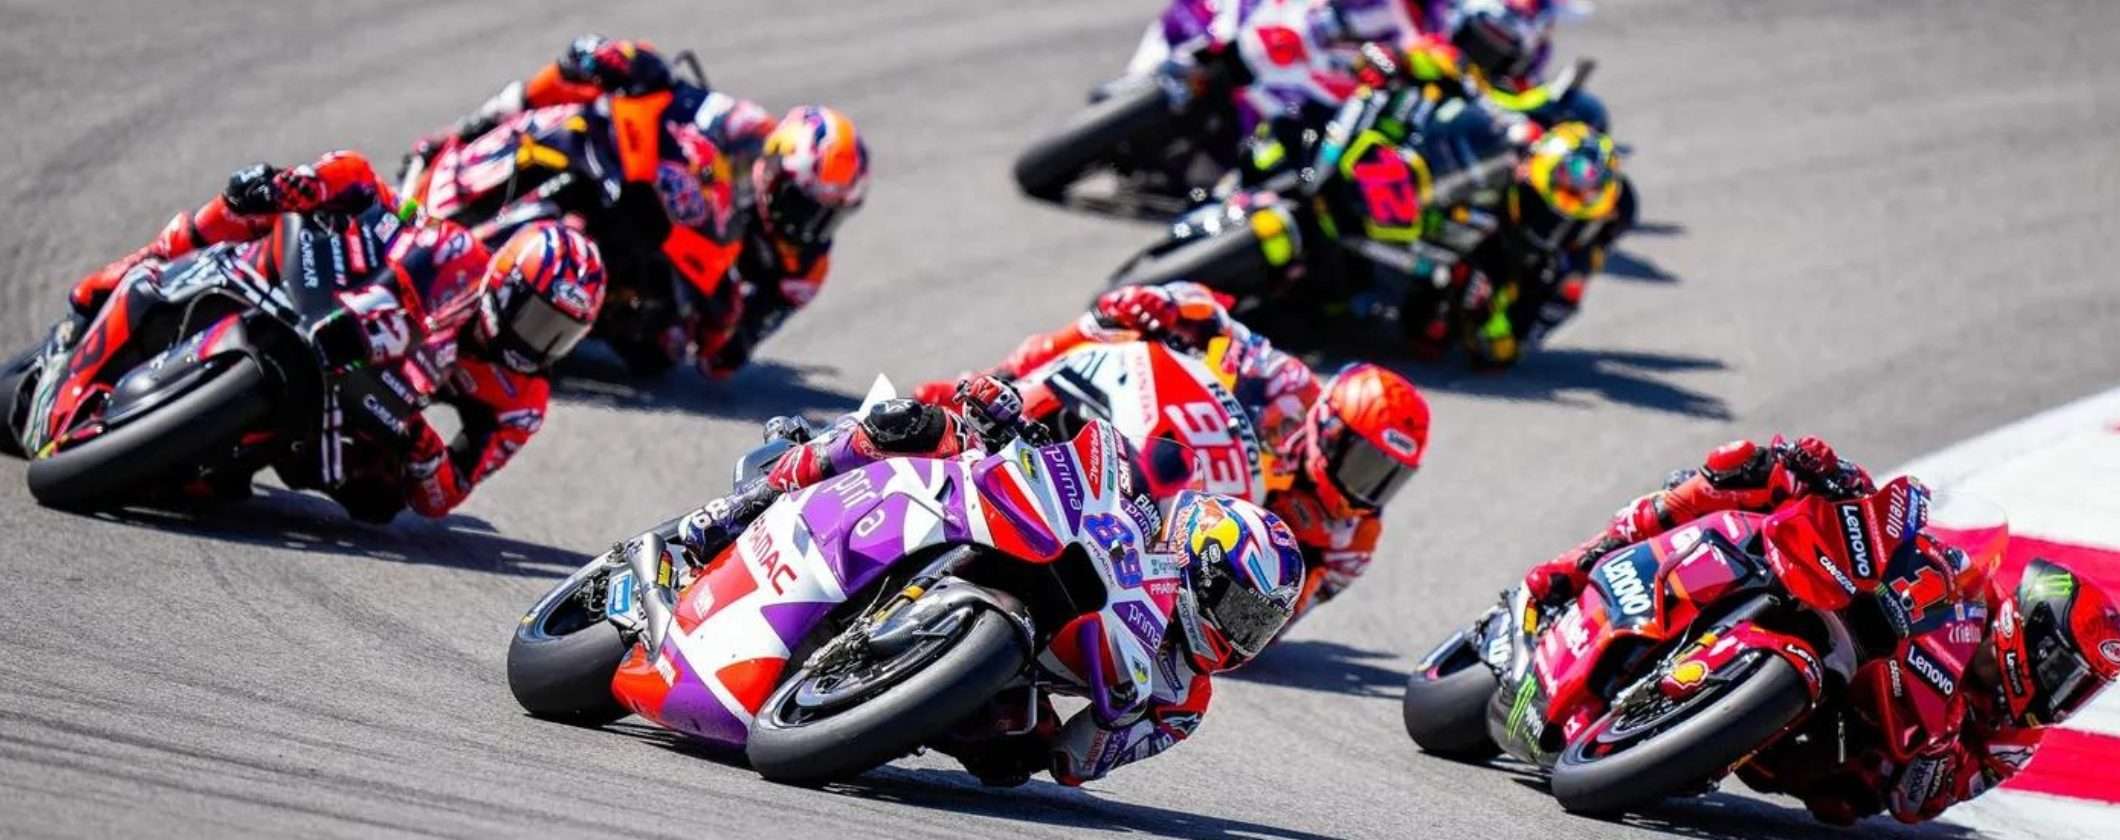 MotoGP: come seguire in streaming dall'estero il GP di Valencia